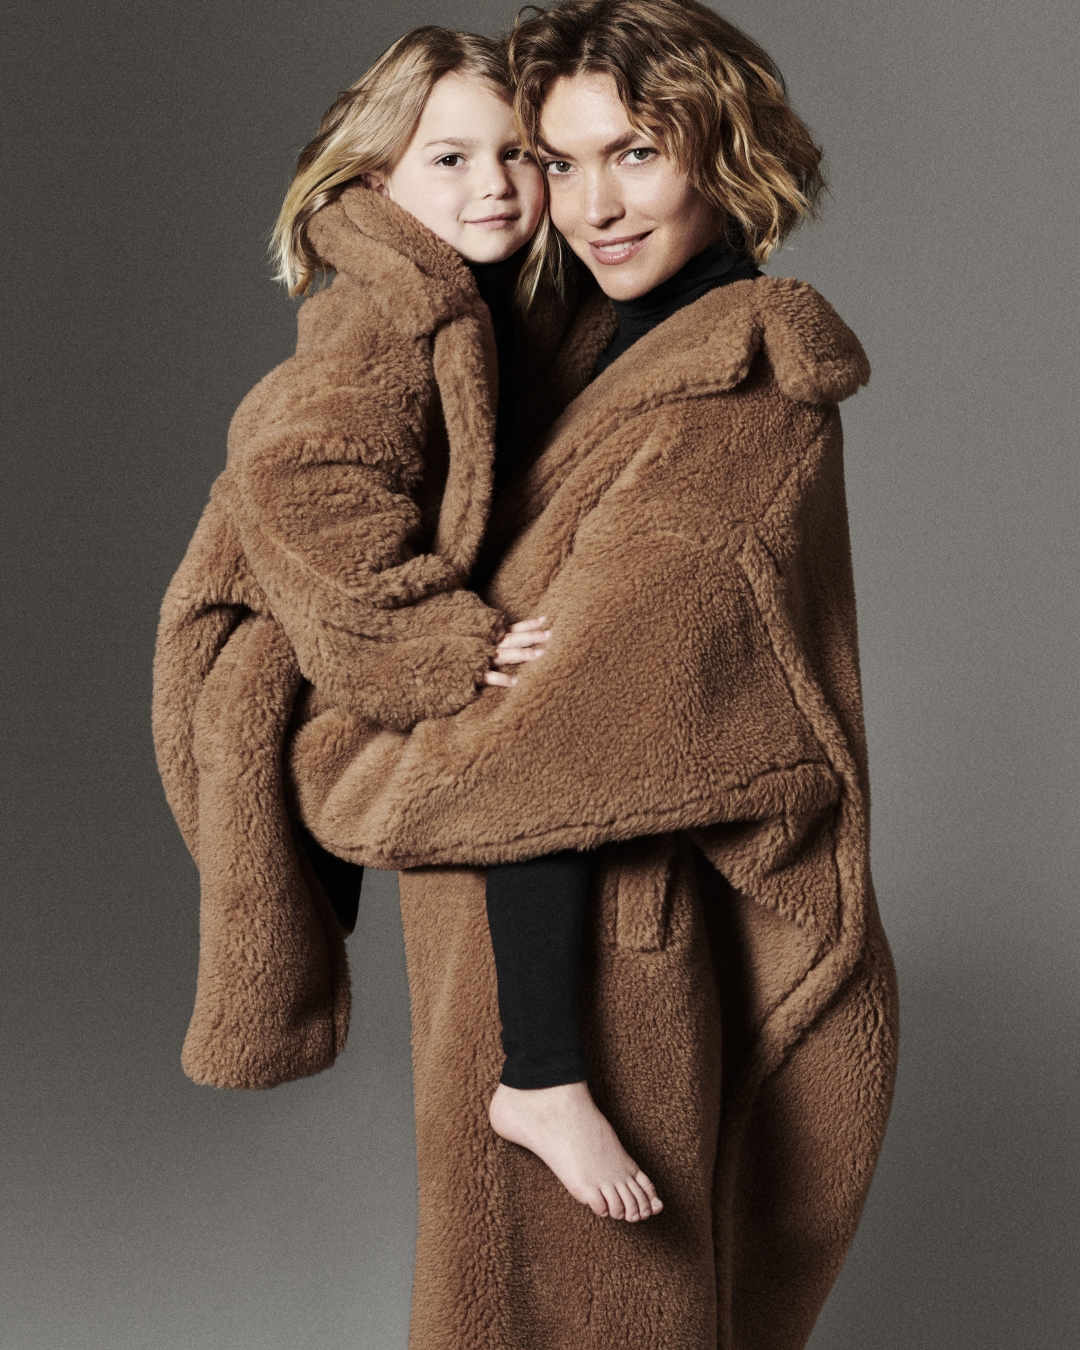 Kultni teddy plašč Max Mara praznuje deset let in zdaj so izdali modele za najmlajše